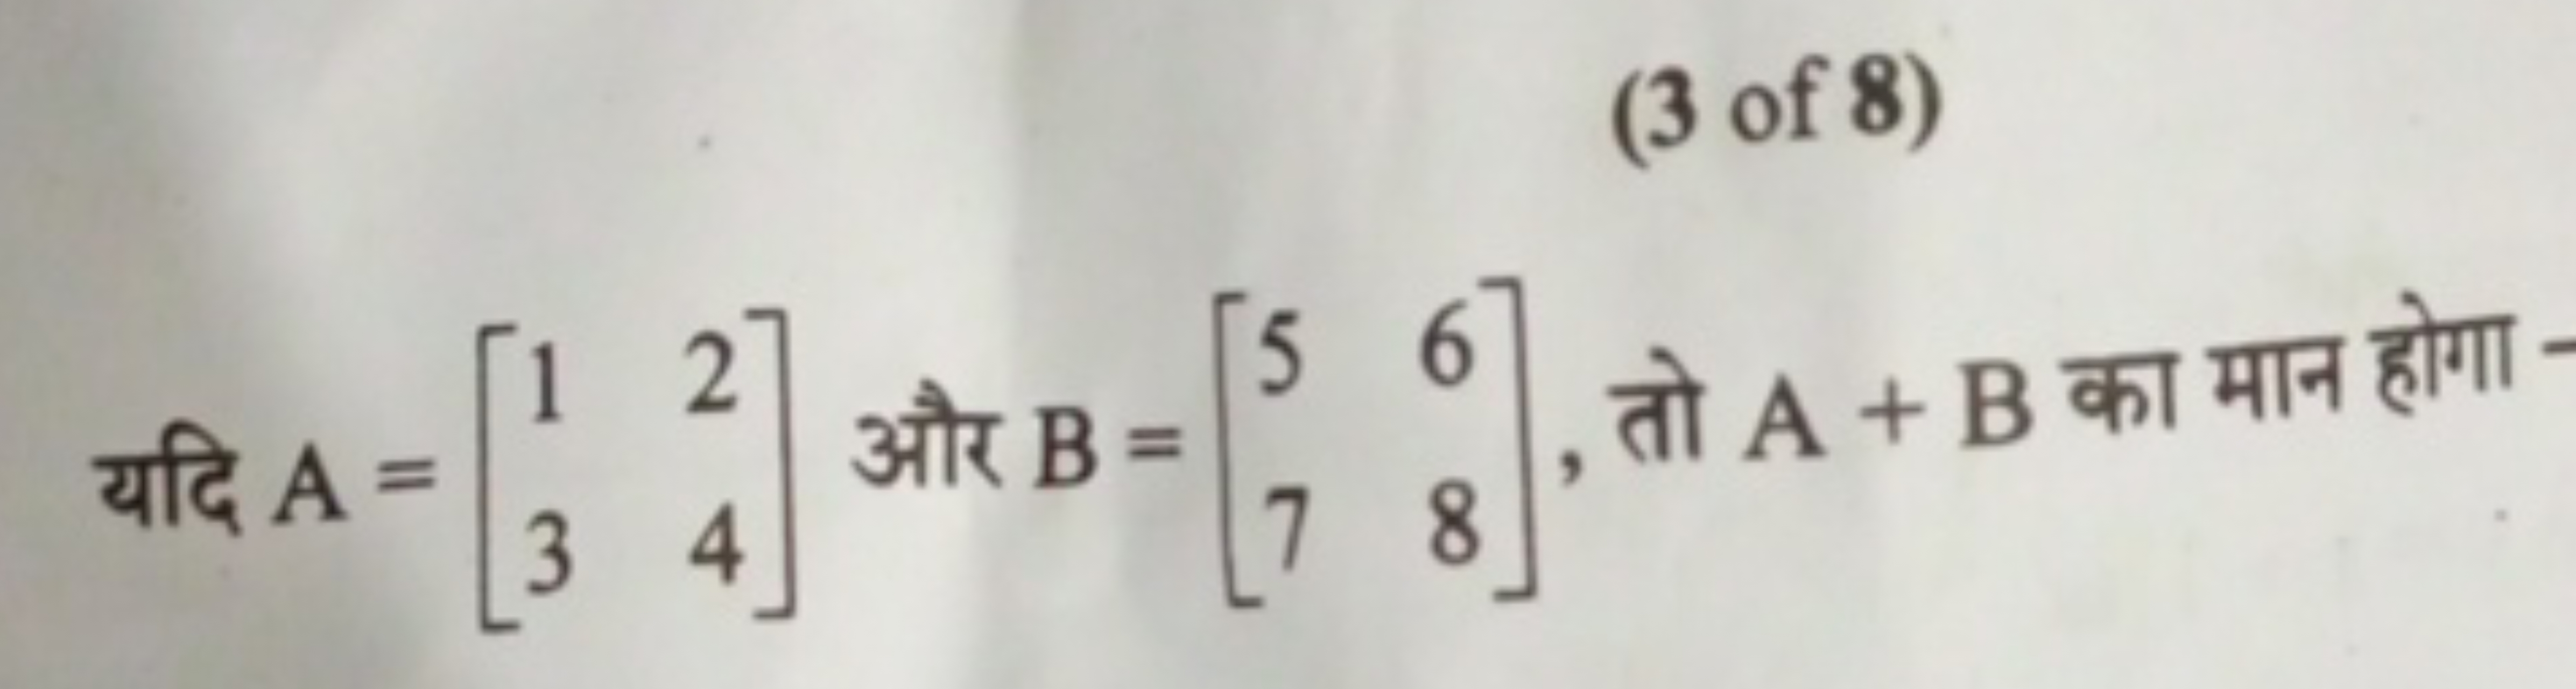 (3 of 8)
यदि A=[13​24​] और B=[57​68​], तो A+B का मान होगा
